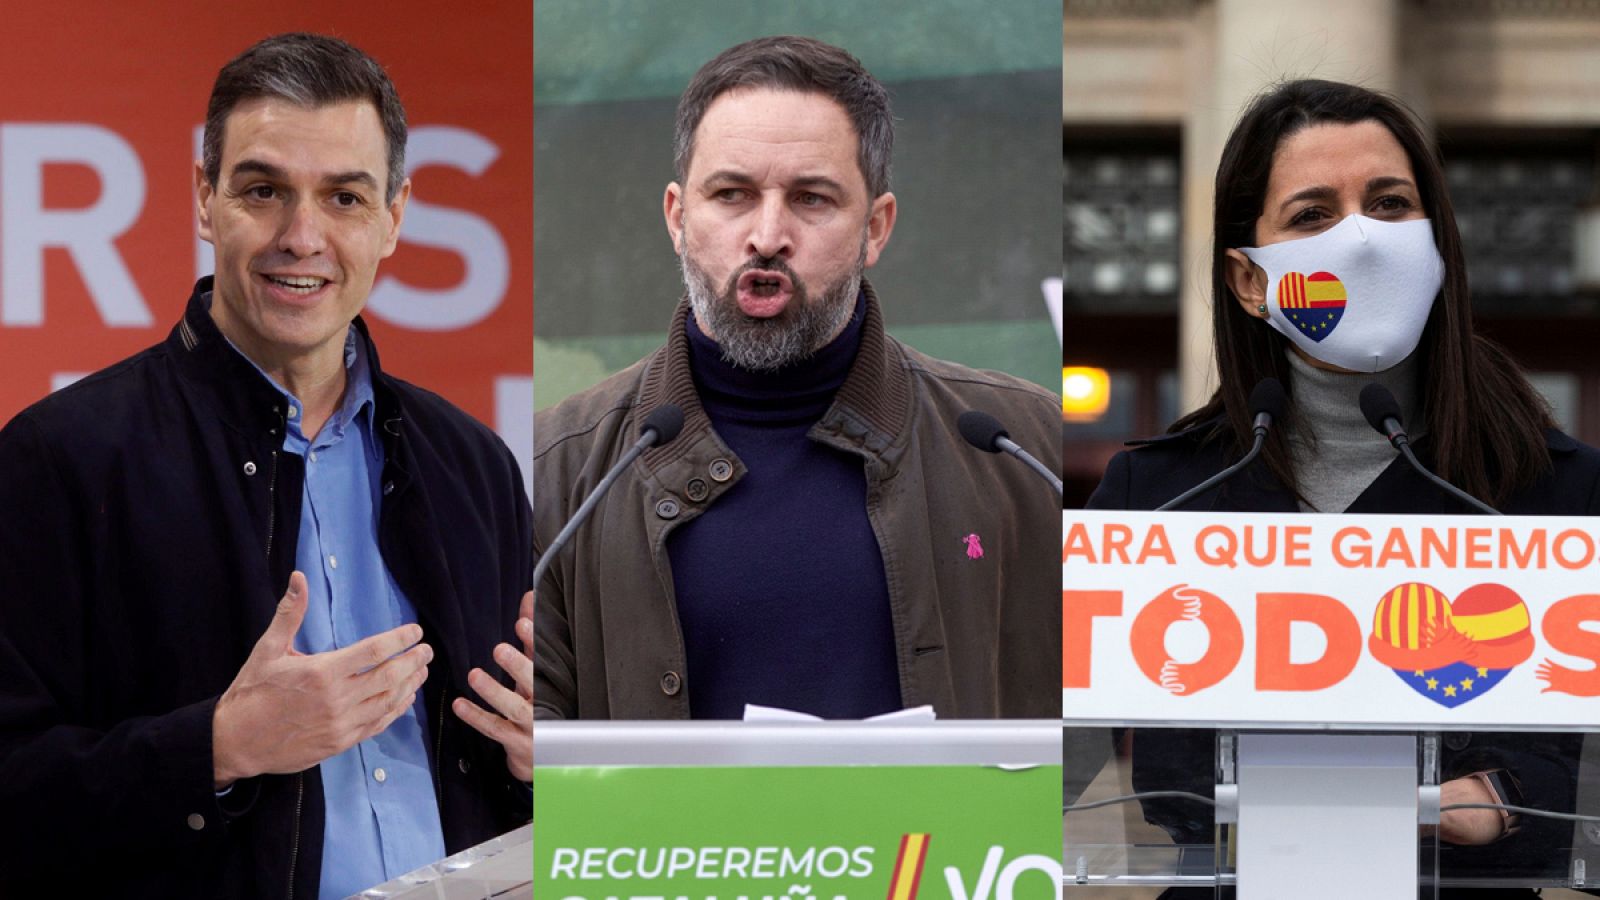 Elecciones catalanas 2021: Sánchez, Abascal y Arrimadas en campaña